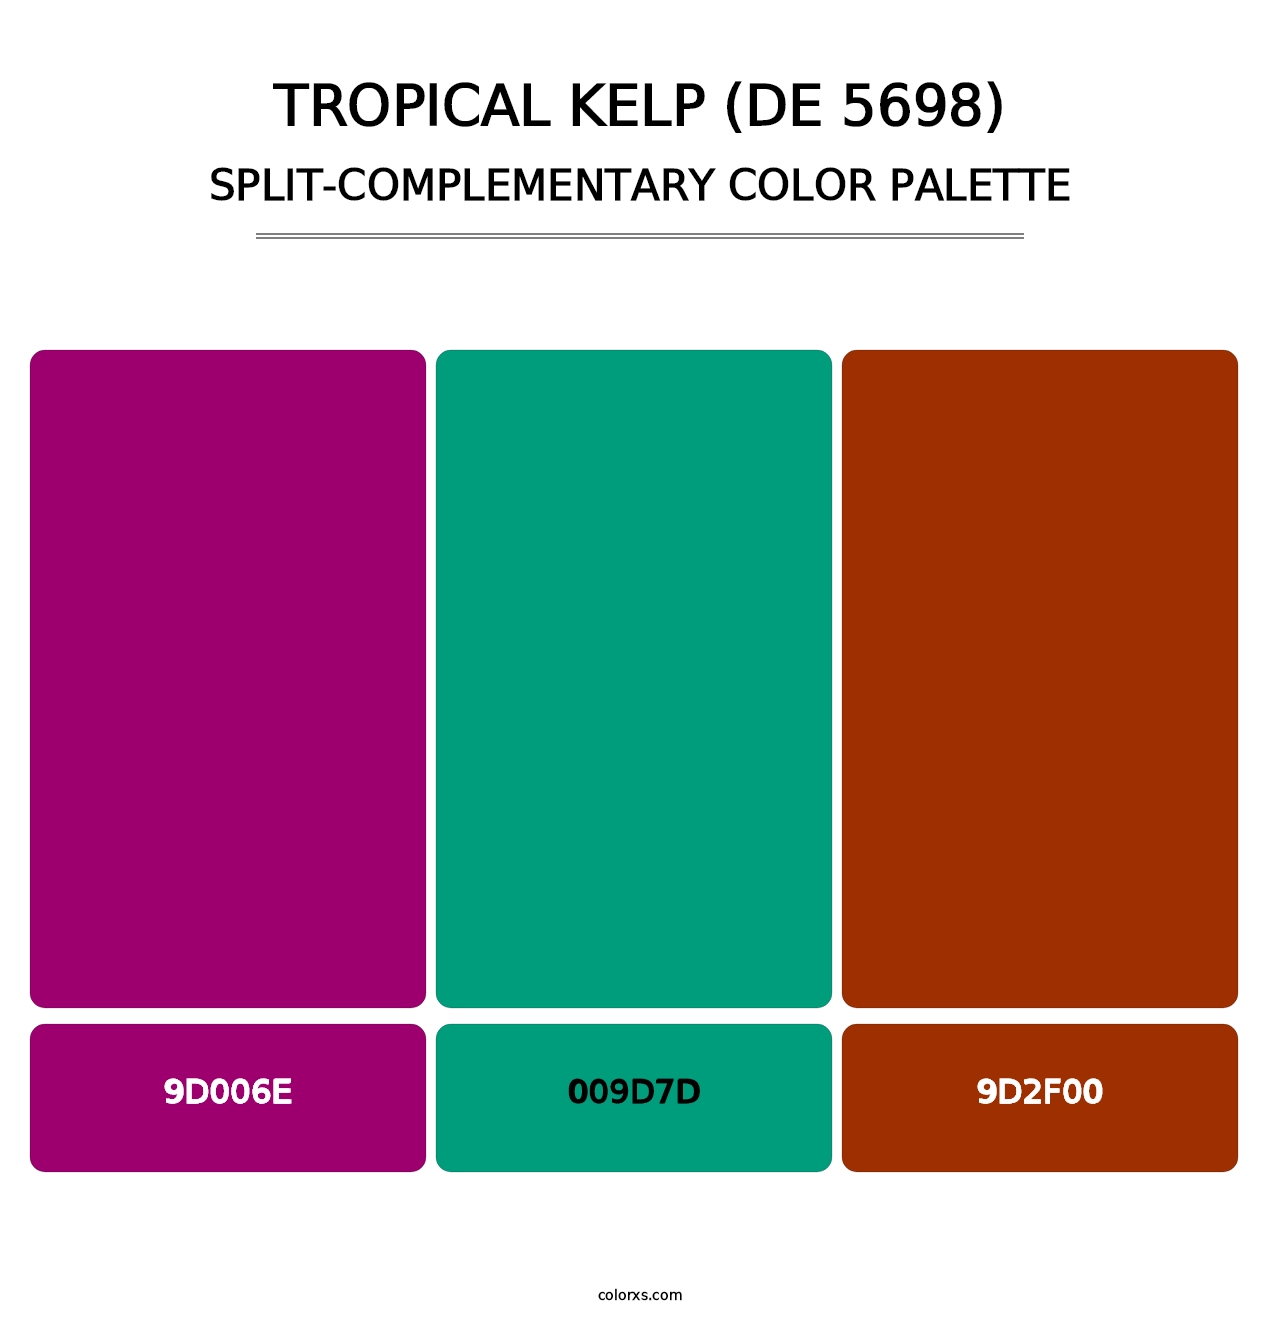 Tropical Kelp (DE 5698) - Split-Complementary Color Palette